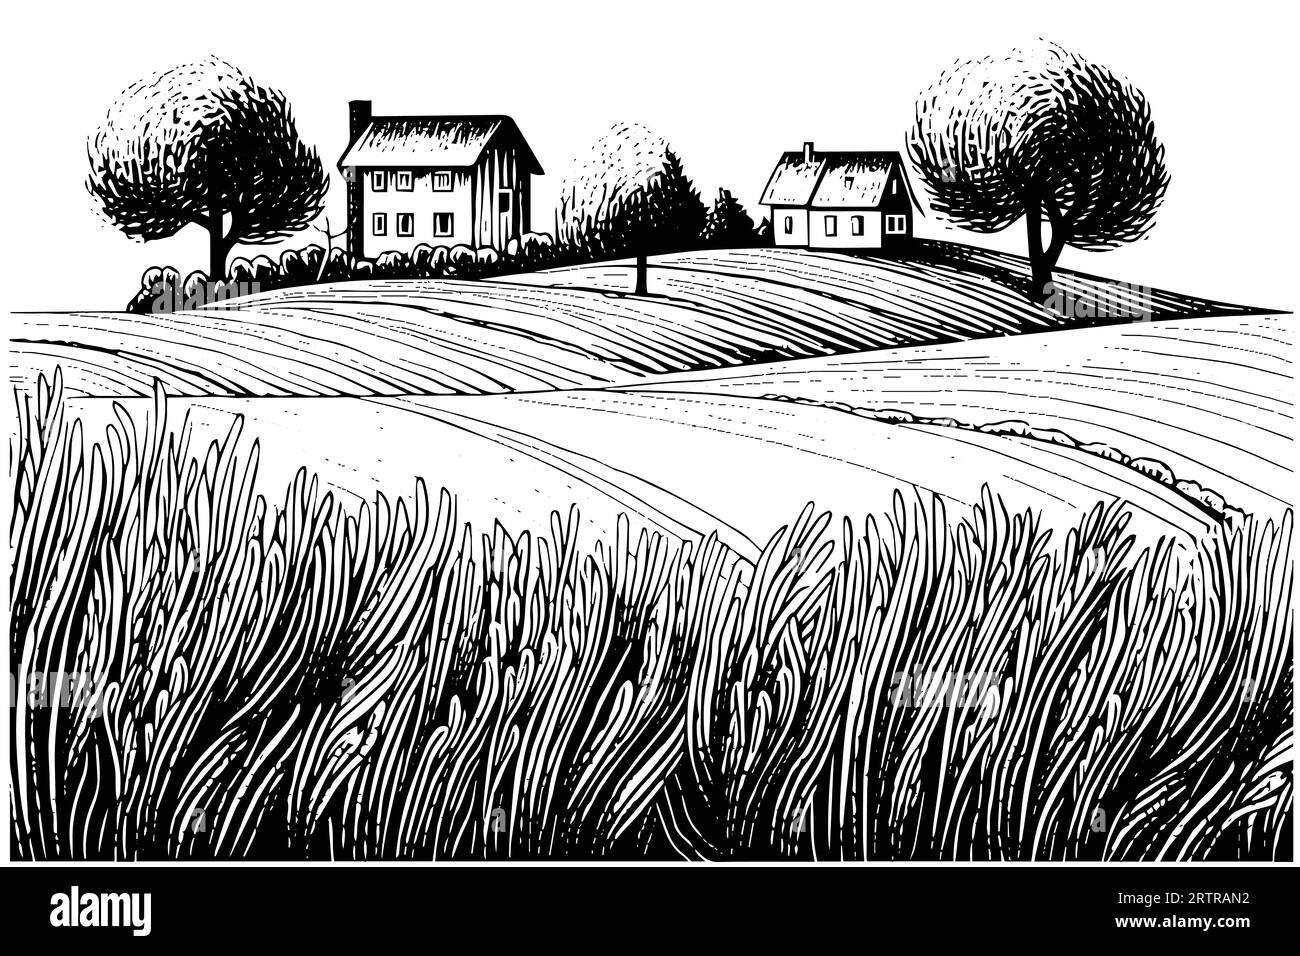 Paesaggio rurale con una fattoria in stile incisione. Illustrazione vettoriale disegnata a mano. Illustrazione Vettoriale